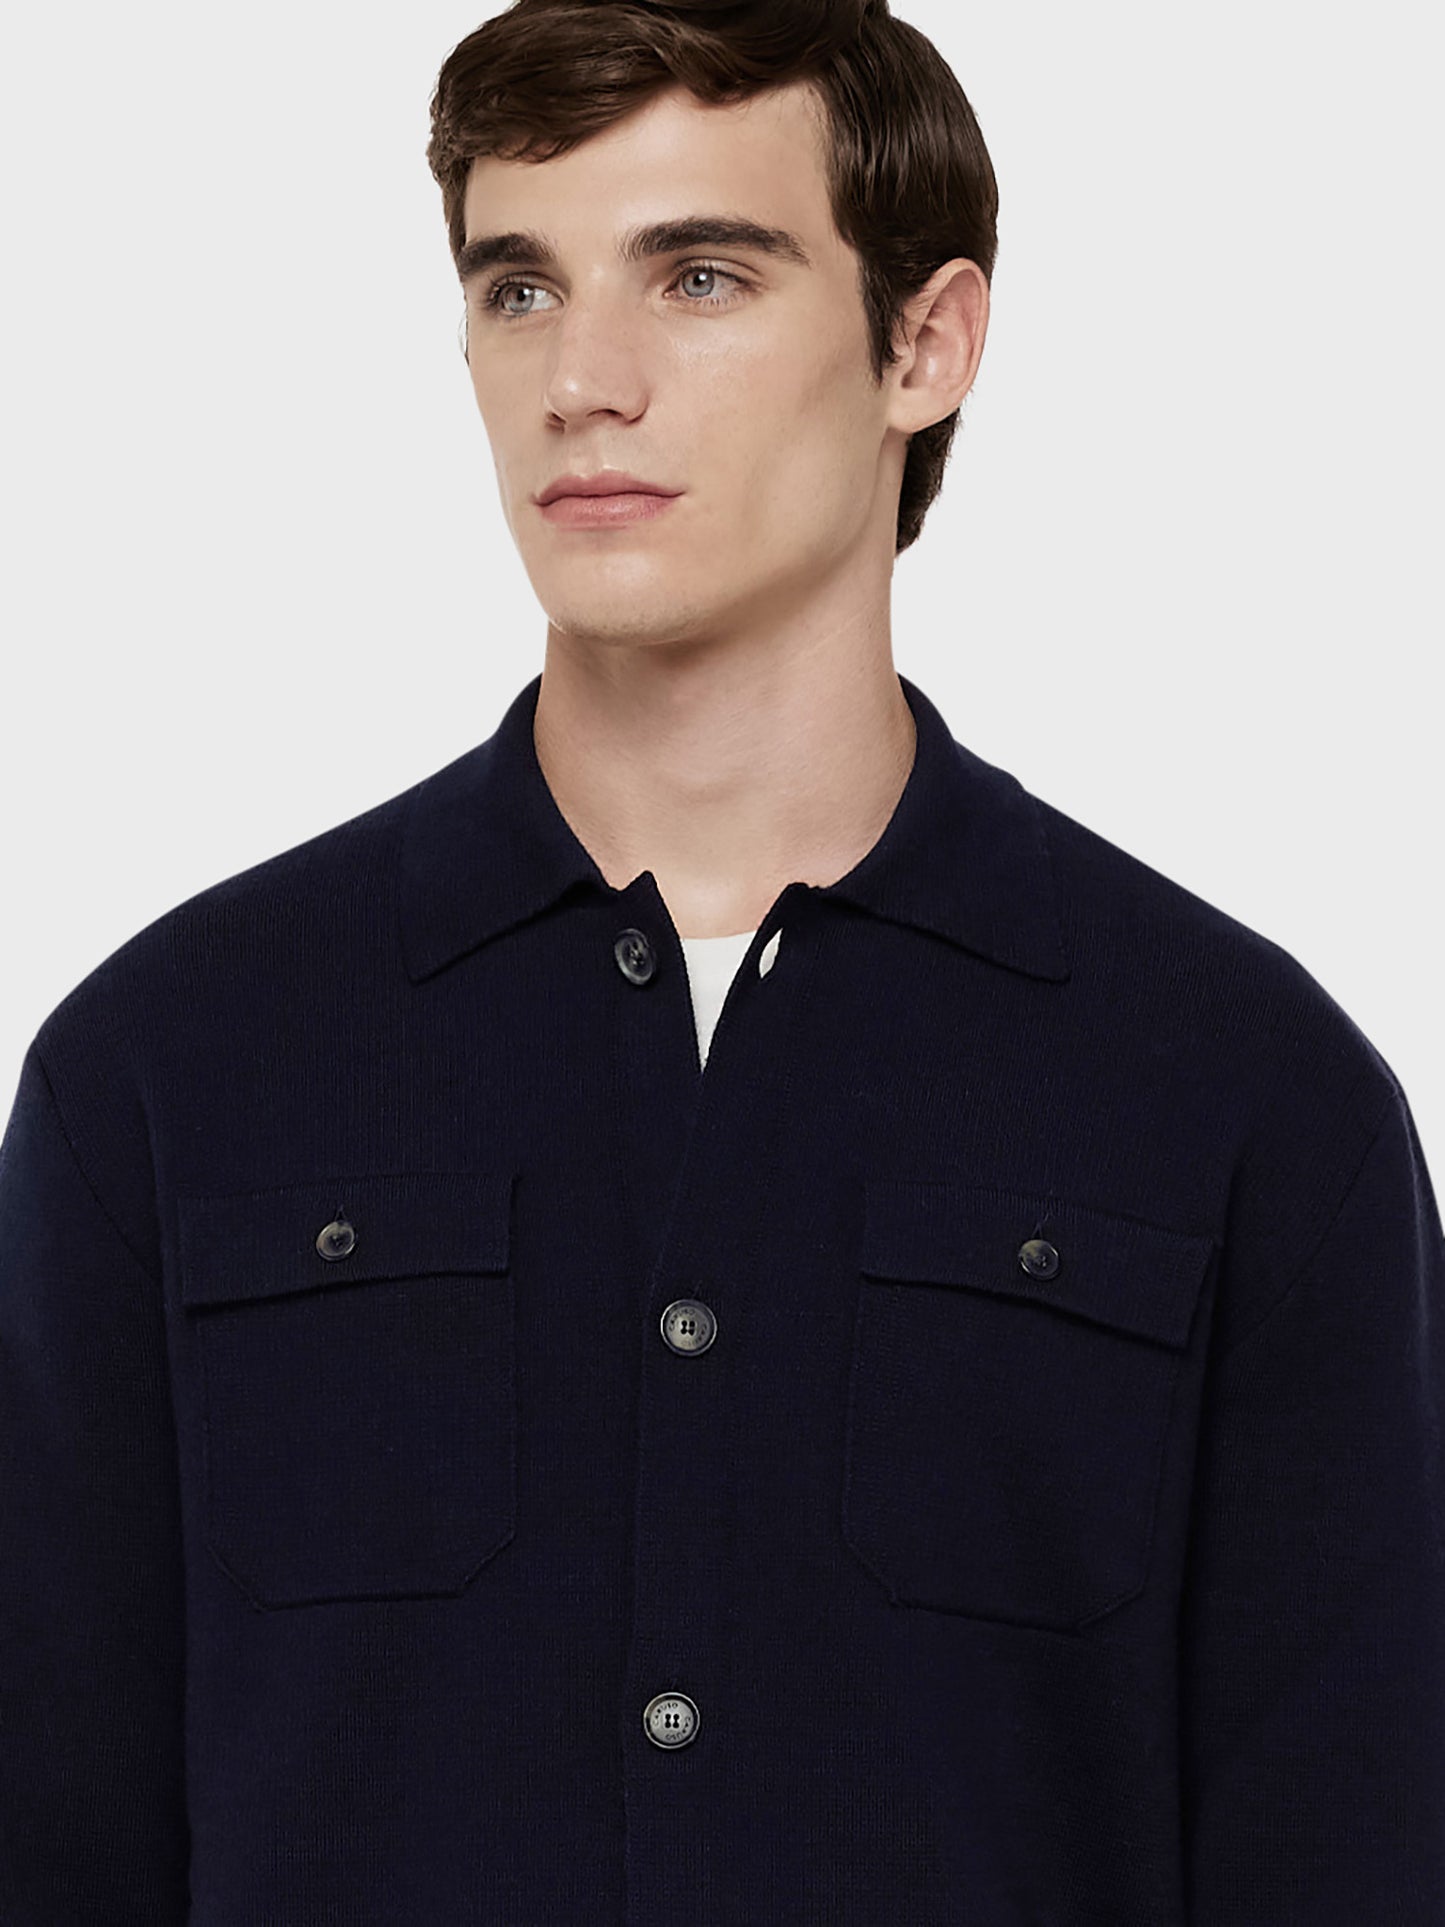 Caruso Menswear Abbigliamento Uomo Overshirt in maglia punto milano blu dettaglio